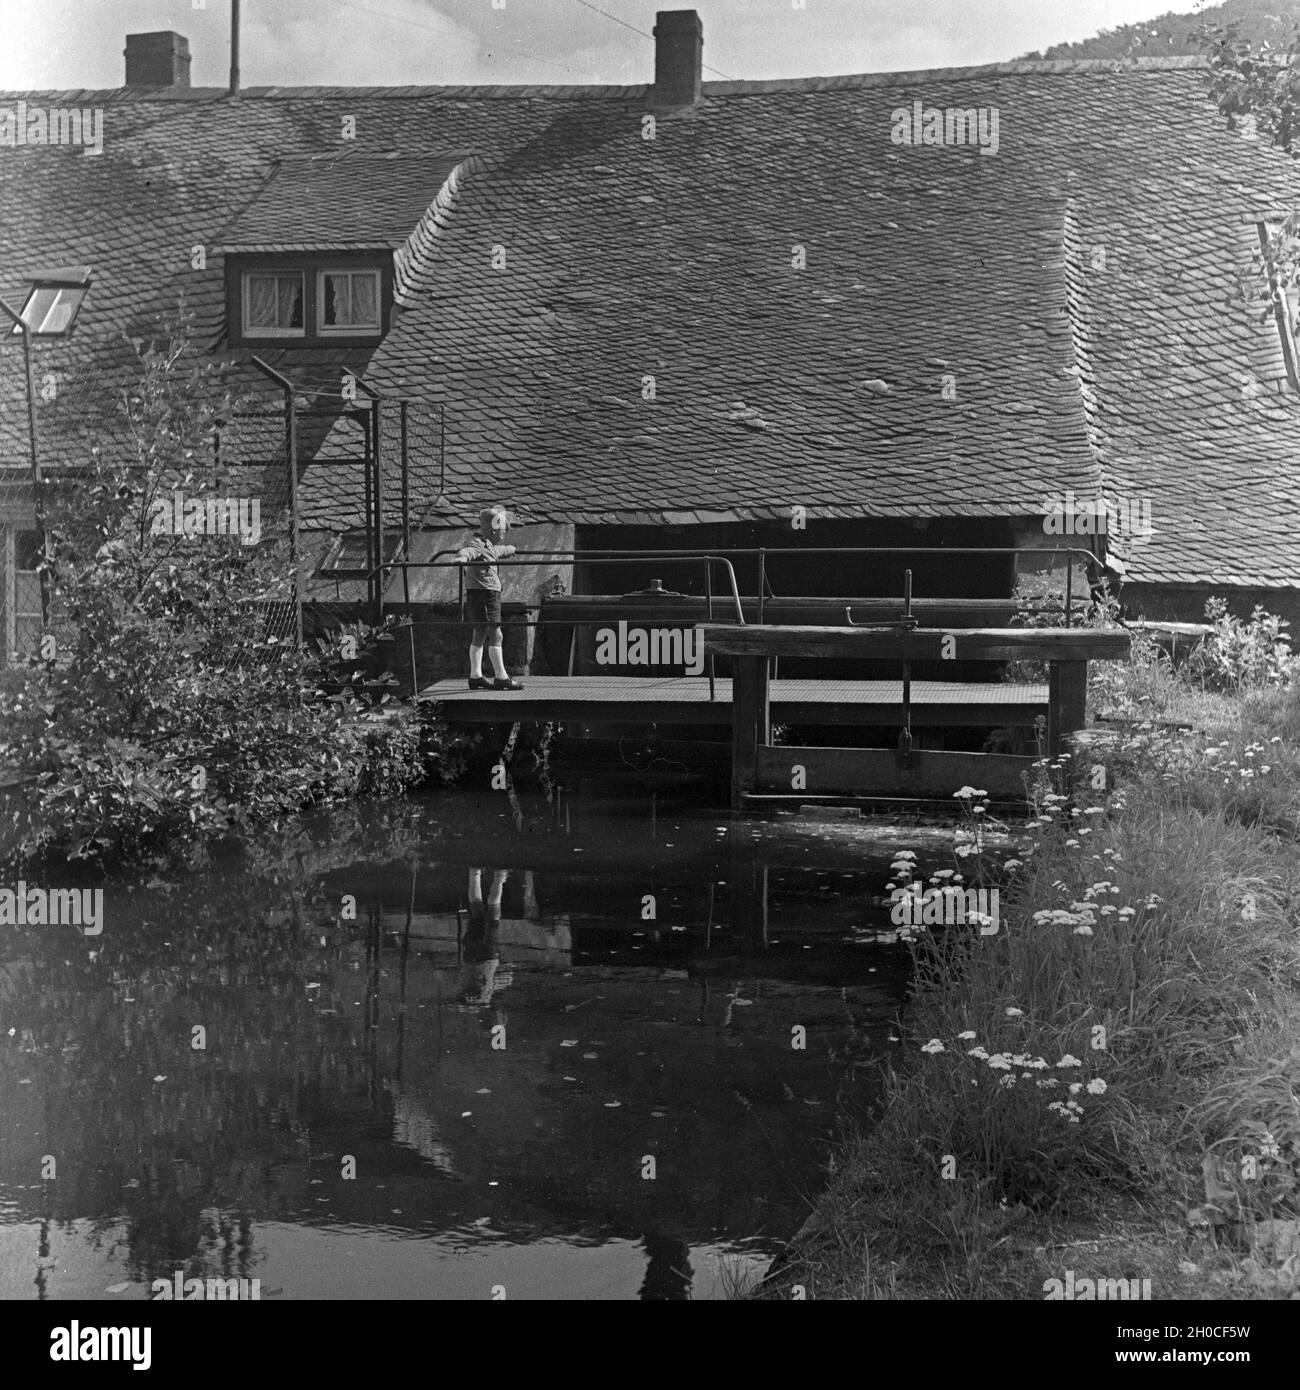 In einer Achatmühle in der Edelsteinstadt Idar Oberstein, Deutschland 1930 Jahre. Presso un mulino di agate nella città di Idar Oberstein, città delle gemme, Germania anni trenta. Foto Stock